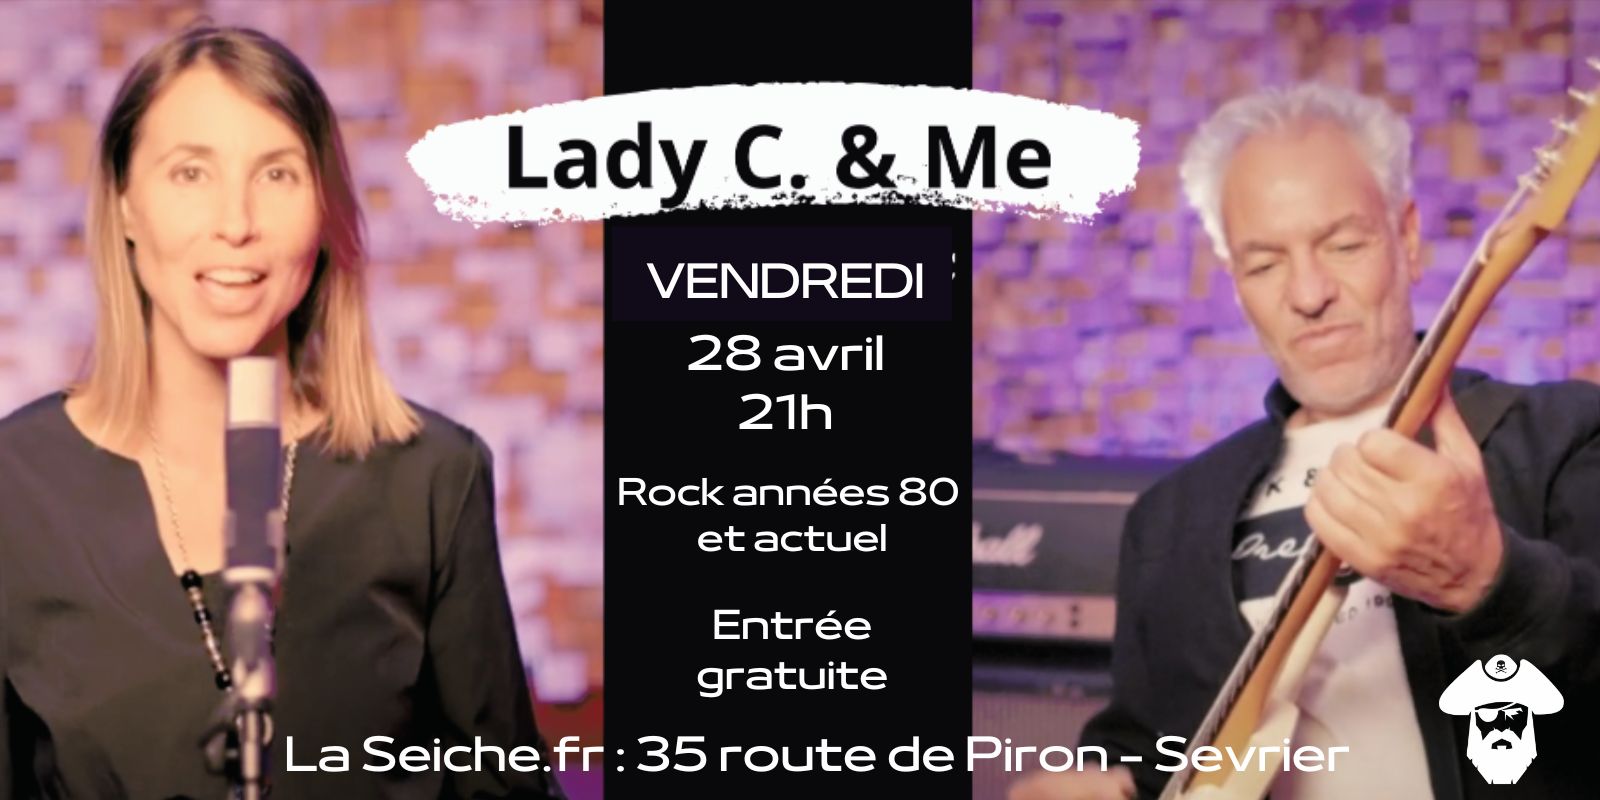 Lady C & Me en concert à la Seiche (Sevrier près d'Annecy)